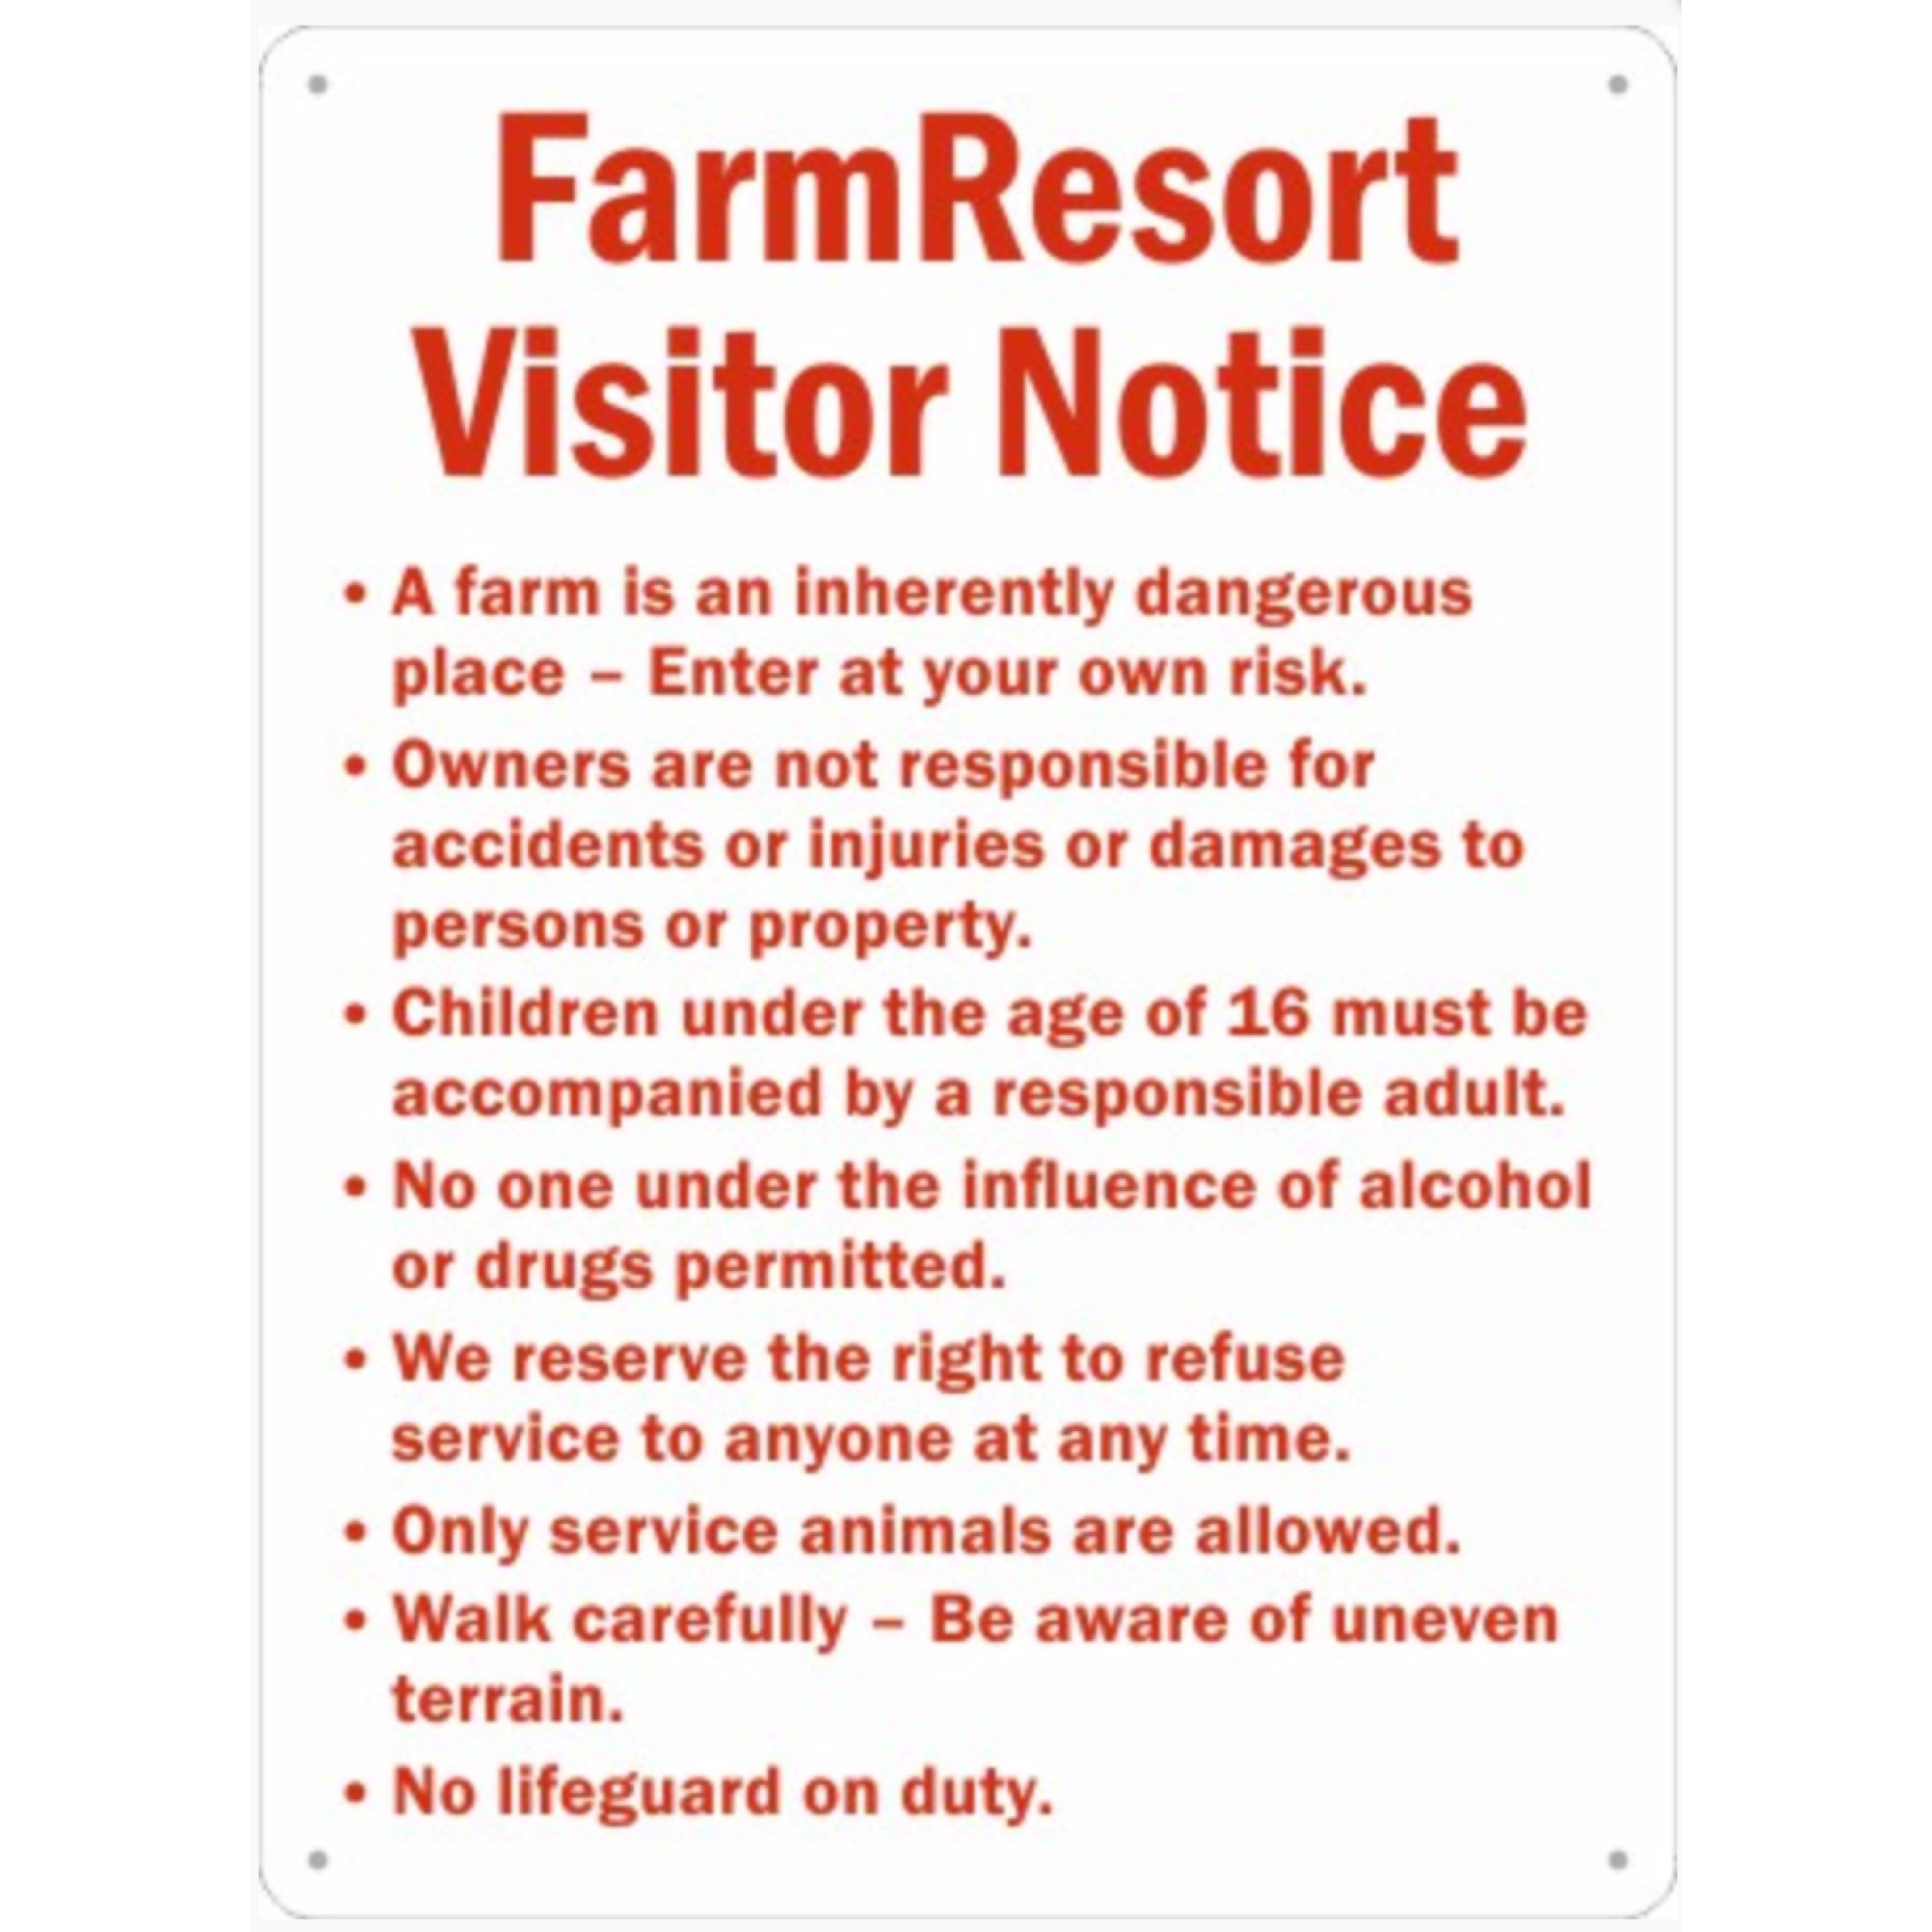 FarmResort Visitor Notice.JPG